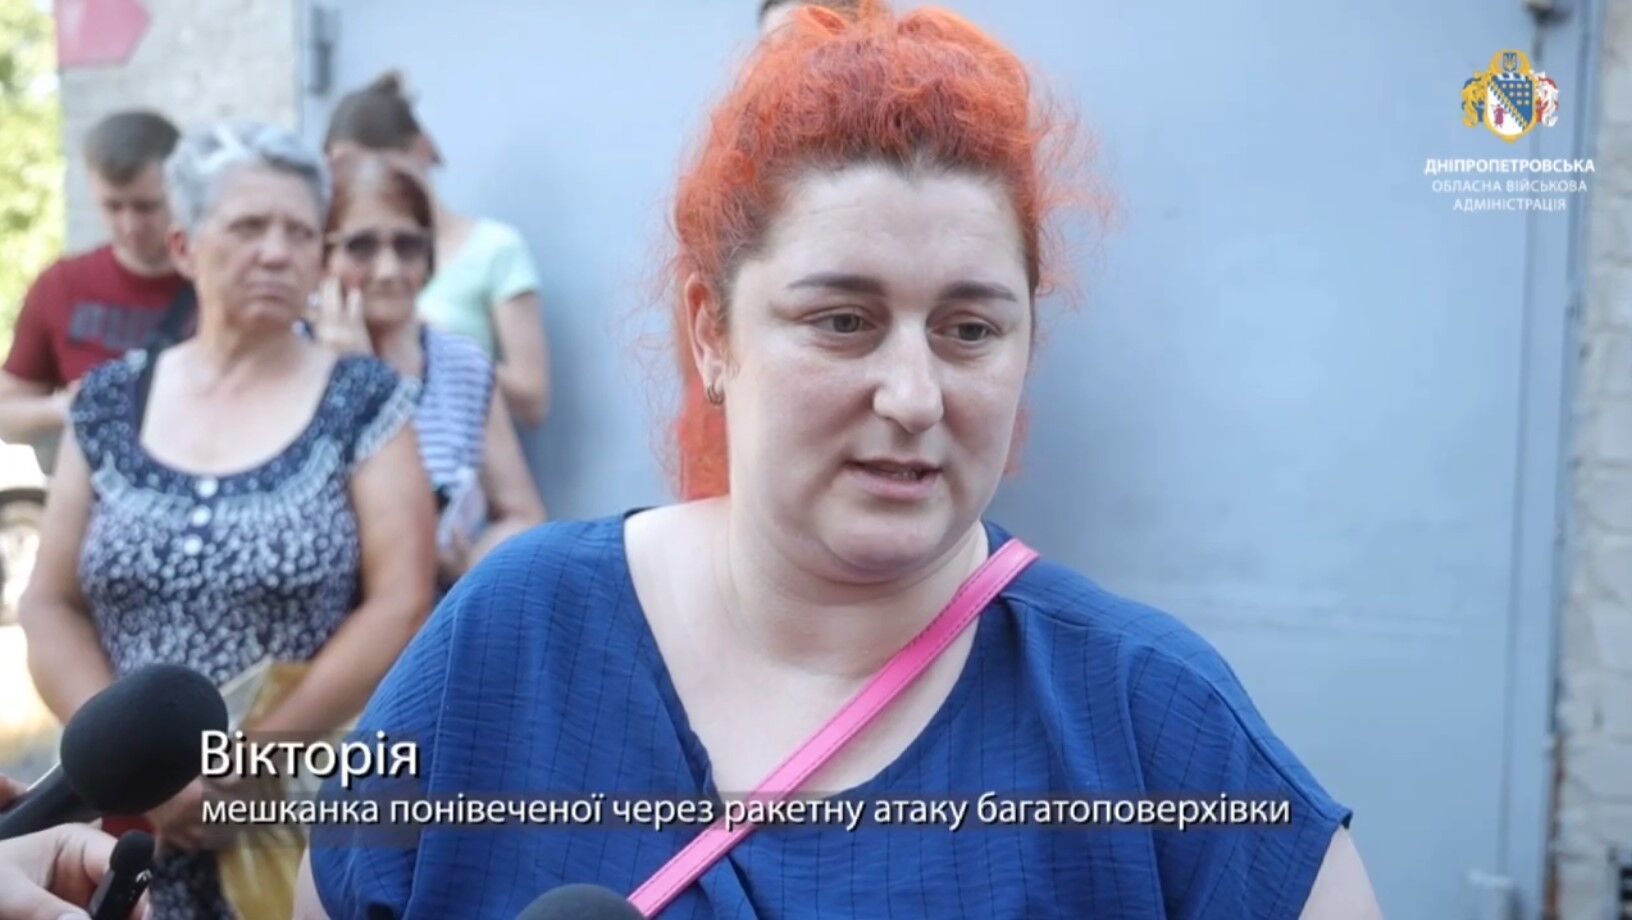 ''Wciąż się trzęsę'': mieszkańcy Dniepru wspominają moment rosyjskiego ataku. Wideo